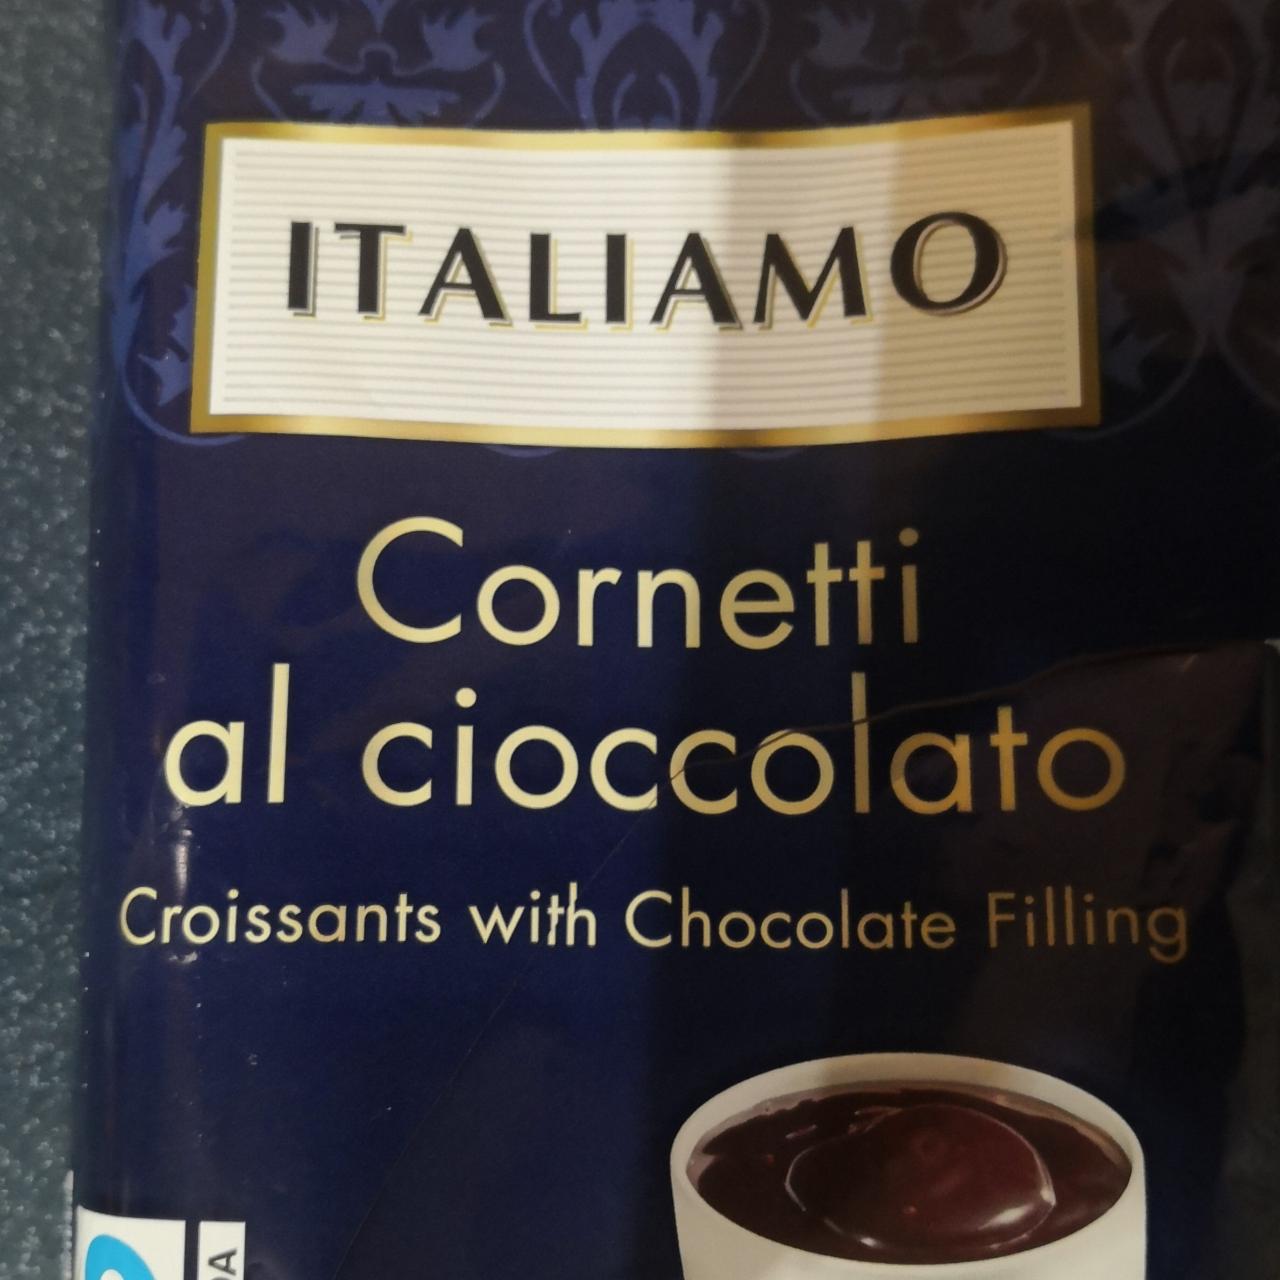 Zdjęcia - Cornetti al cioccolato Italiamo